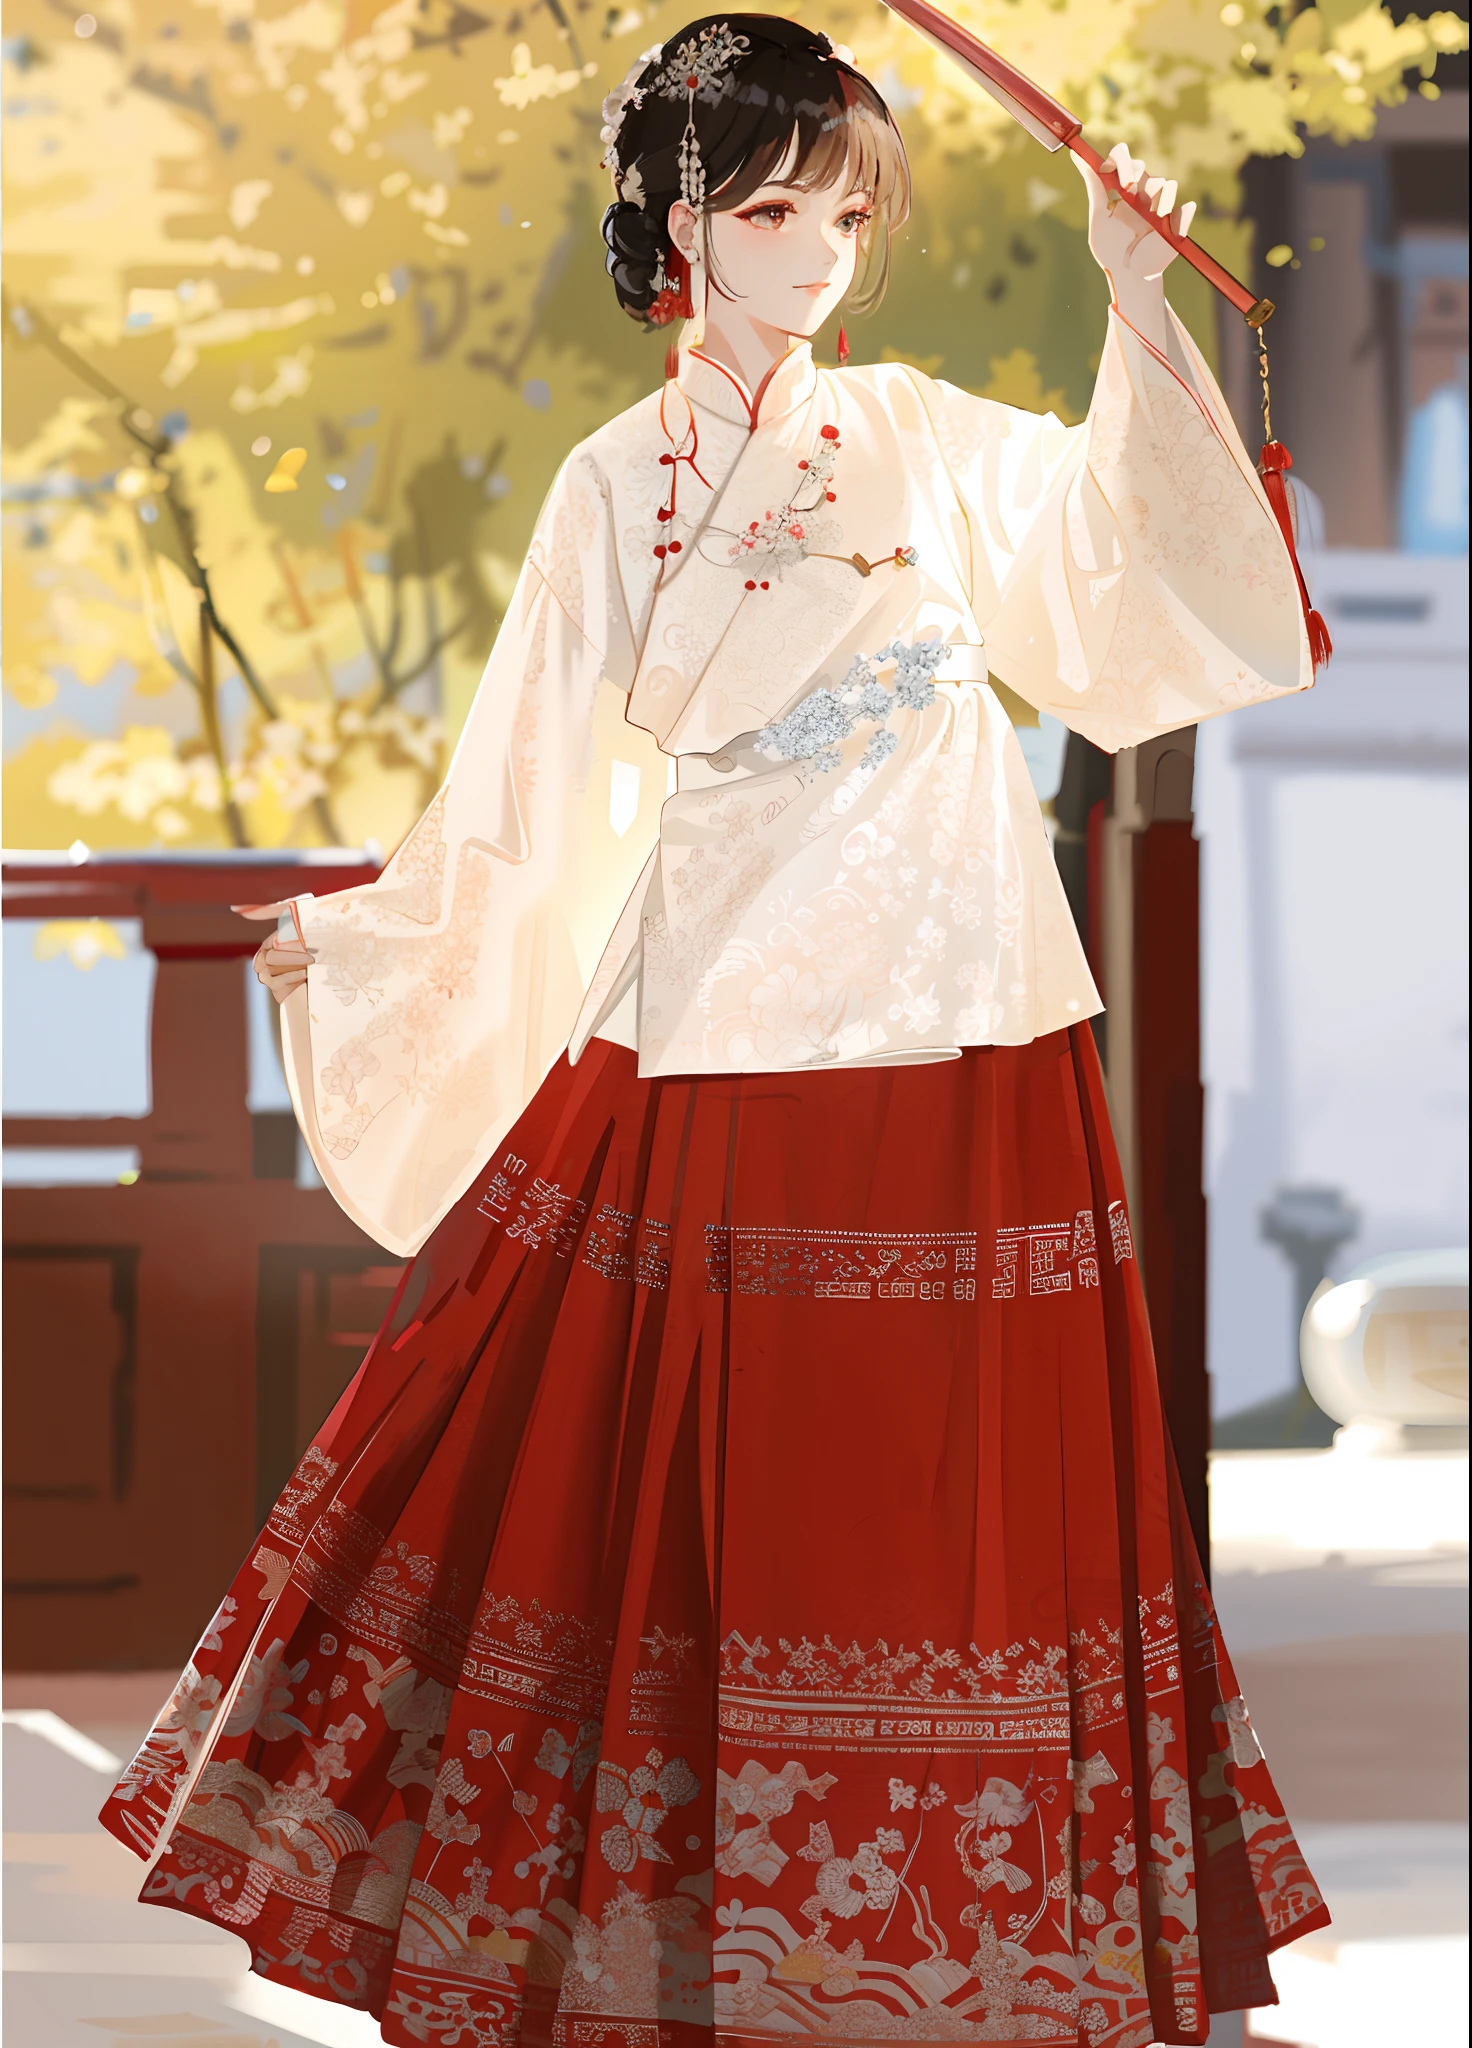 빨간색과 흰색 드레스를 입고 빨간 우산을 들고 있는 여자，한푸，흰 한푸，궁전，한푸걸，고대 중국 의상을 입으세요，중국 전통 의상，고대 중국 의상을 입고，중국 전통，화려한 실크 옷을 입고，중국 복장，왕실의 우아한 의류，중국 스타일，고대 아시아 왕조의 공주